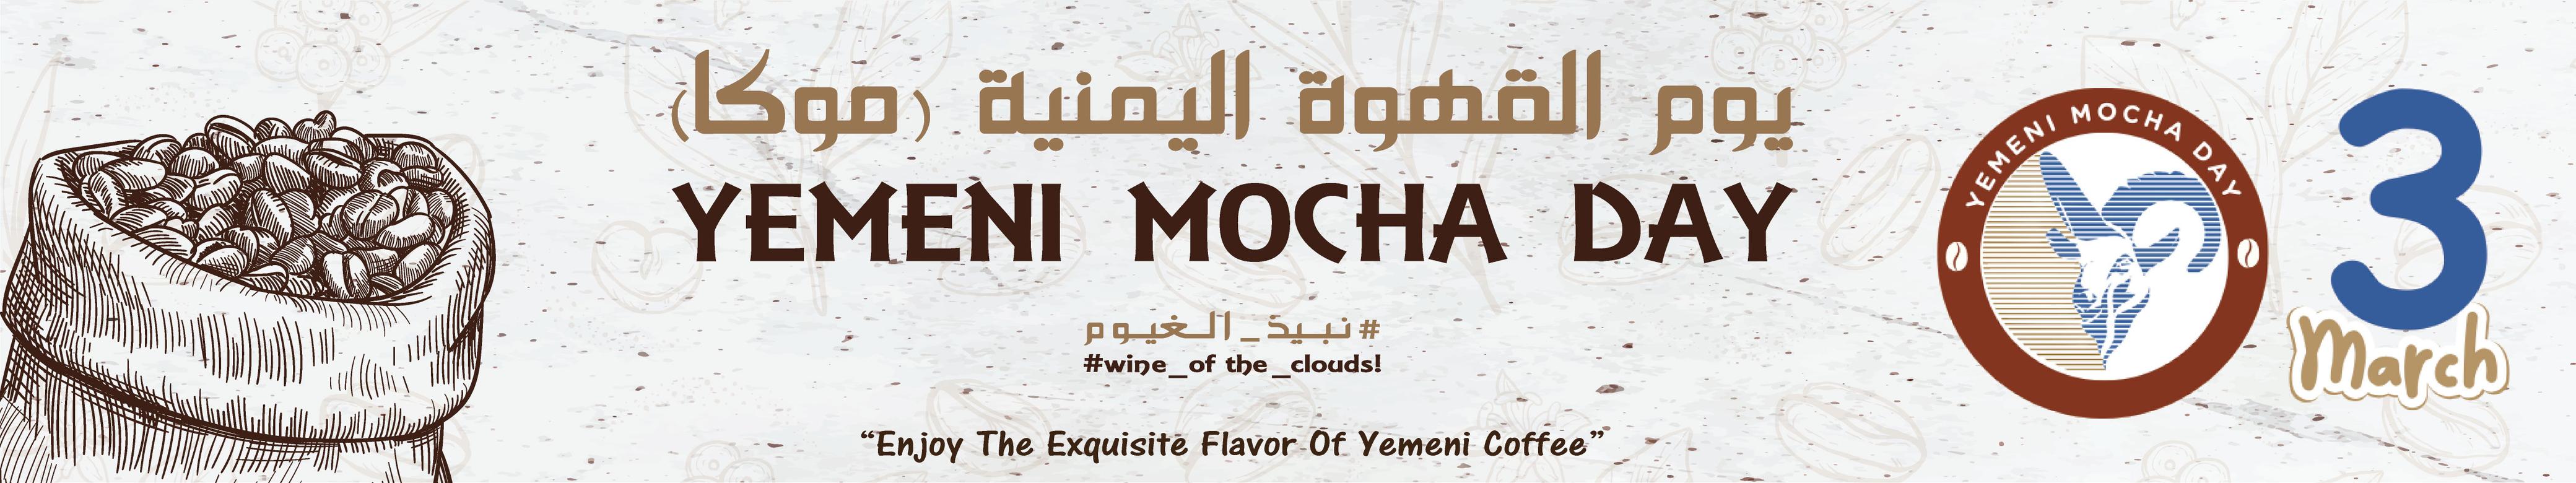 مجموعة اليمنيون الإعلامية الثقافية تقيم حملة تذوق القهوة اليمنية في جامعة UCSI ومدرسة النخبة العربية 